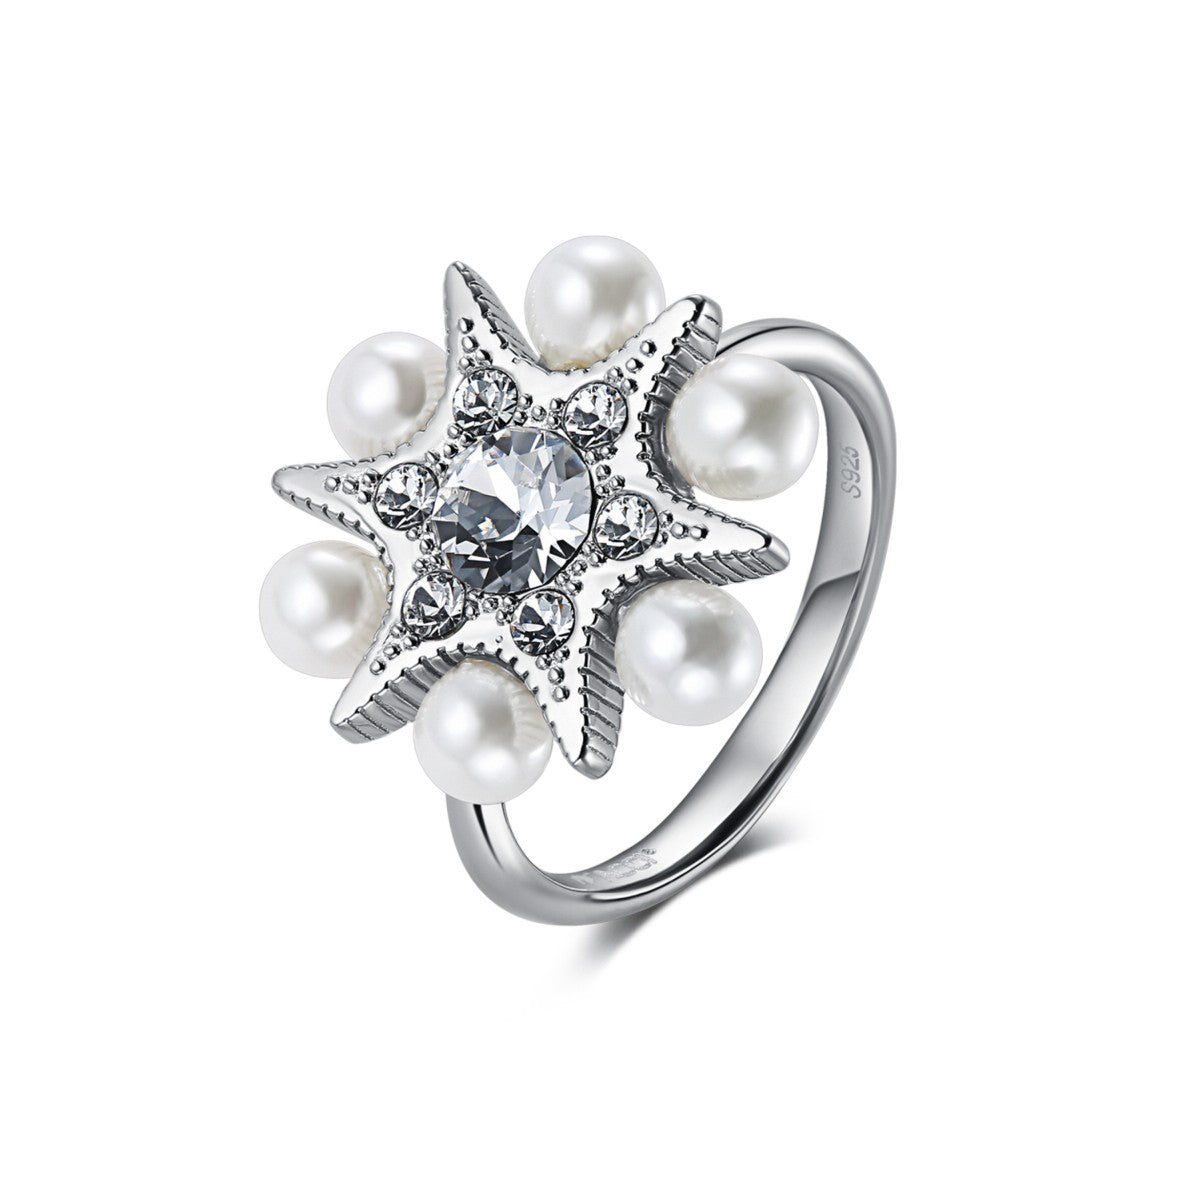 所羅門之星925純銀施華洛世奇水晶珍珠戒指